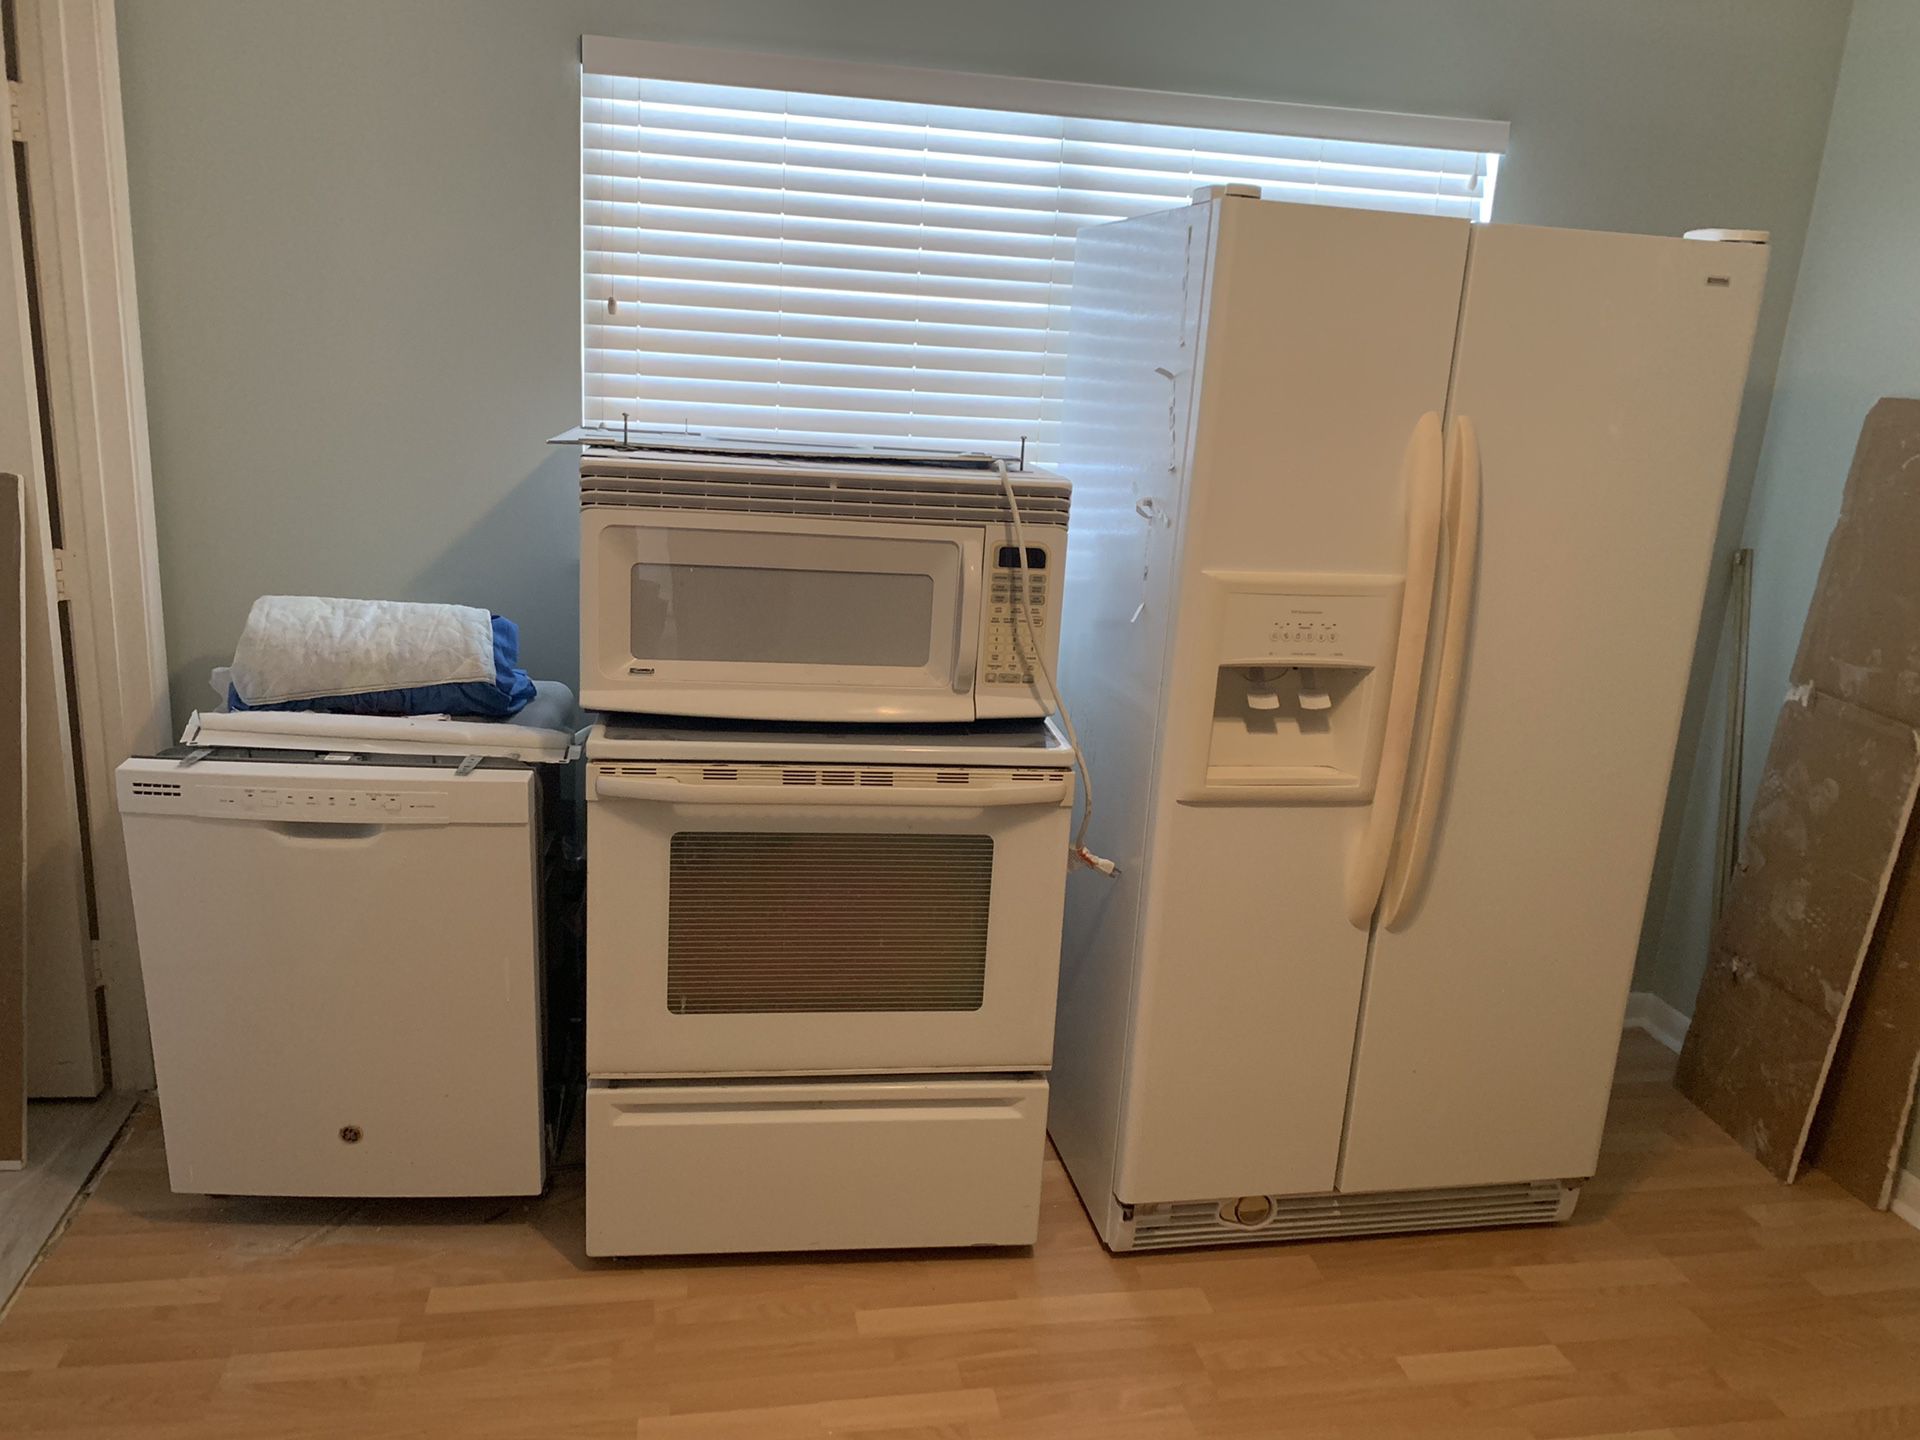 Complete kitchen set appliances